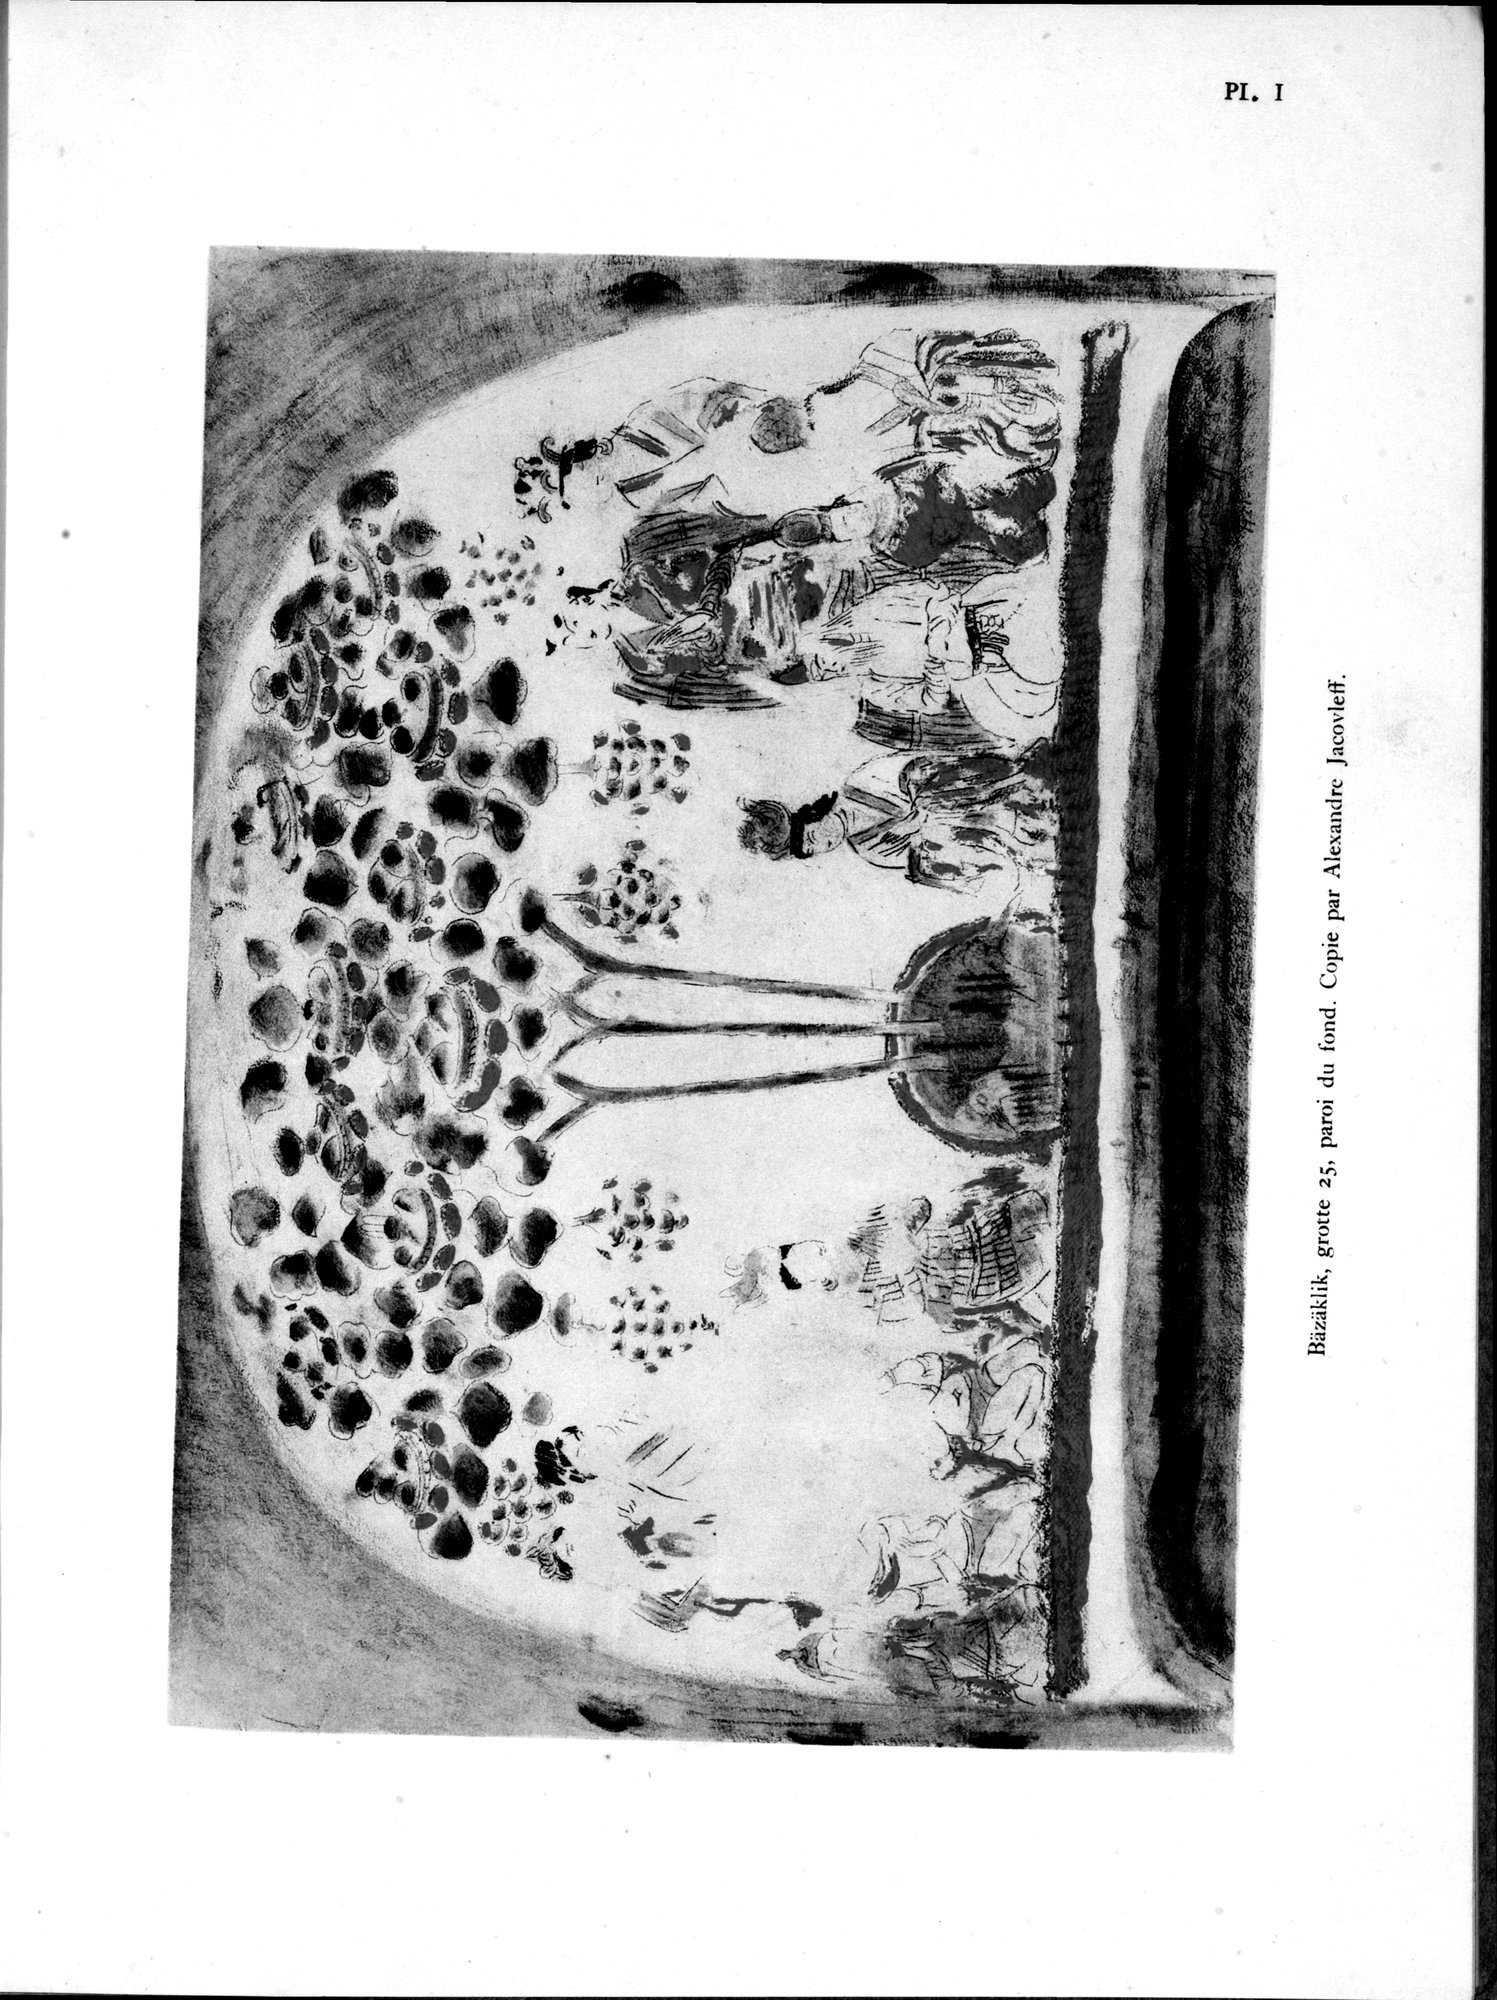 Recherches Archéologiques en Asie Centrale (1931) : vol.1 / Page 11 (Grayscale High Resolution Image)